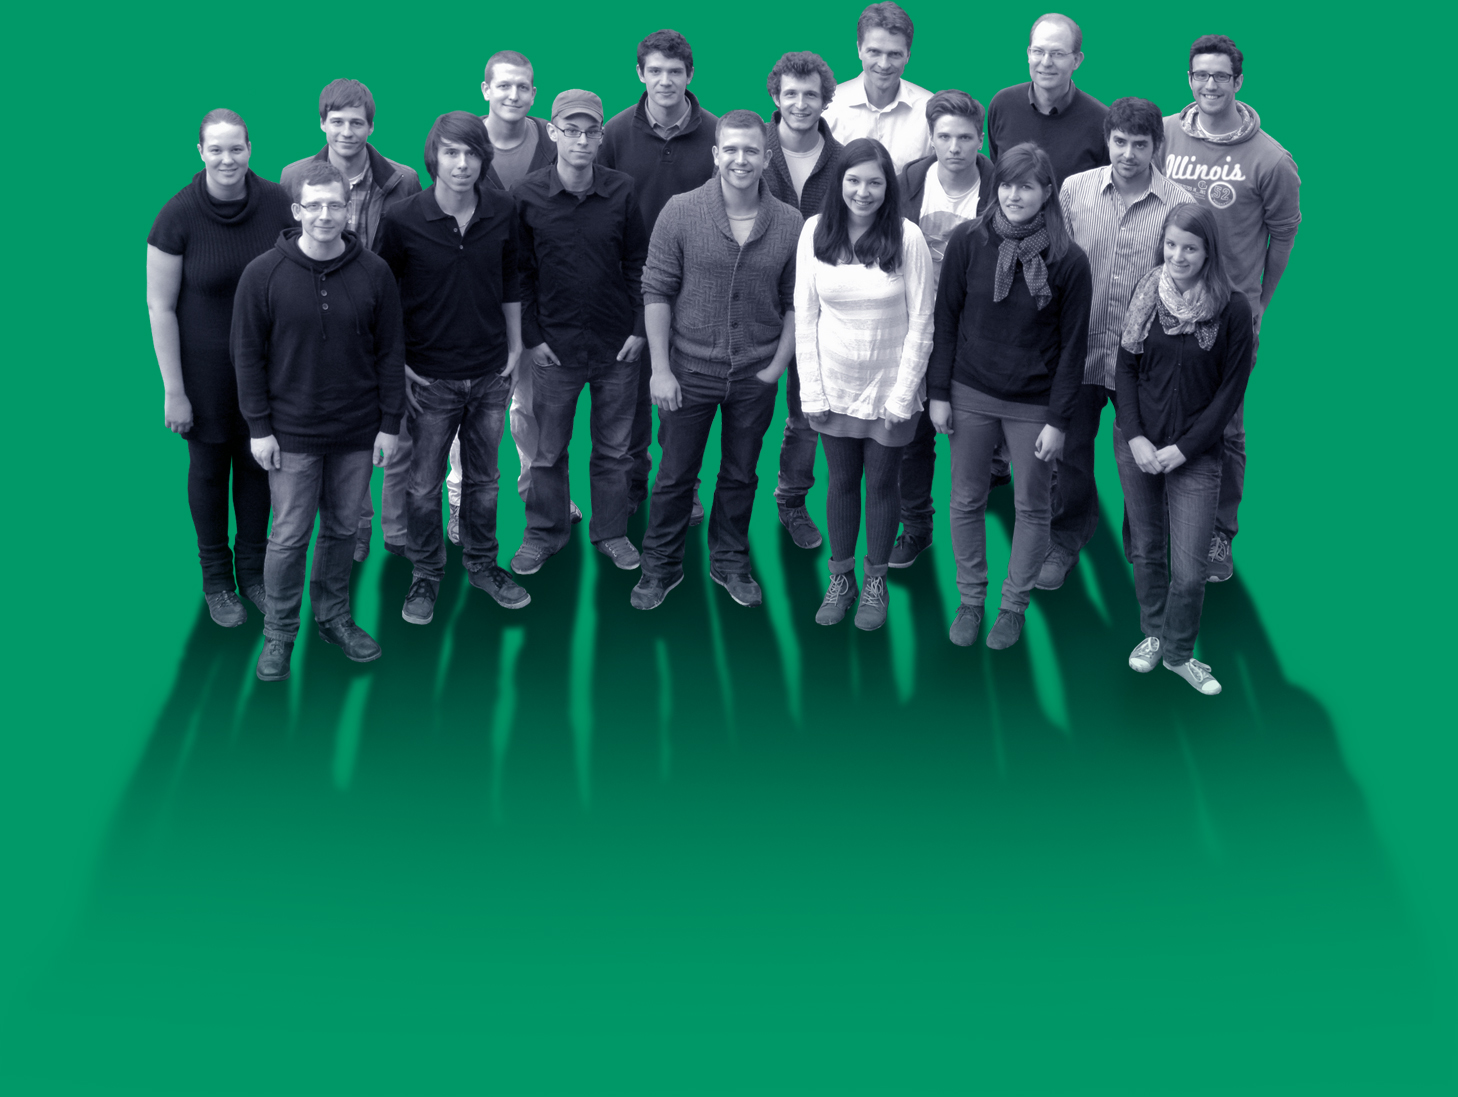 Darmstadt Gruppenfoto (mit grünem Hintergrund).jpg